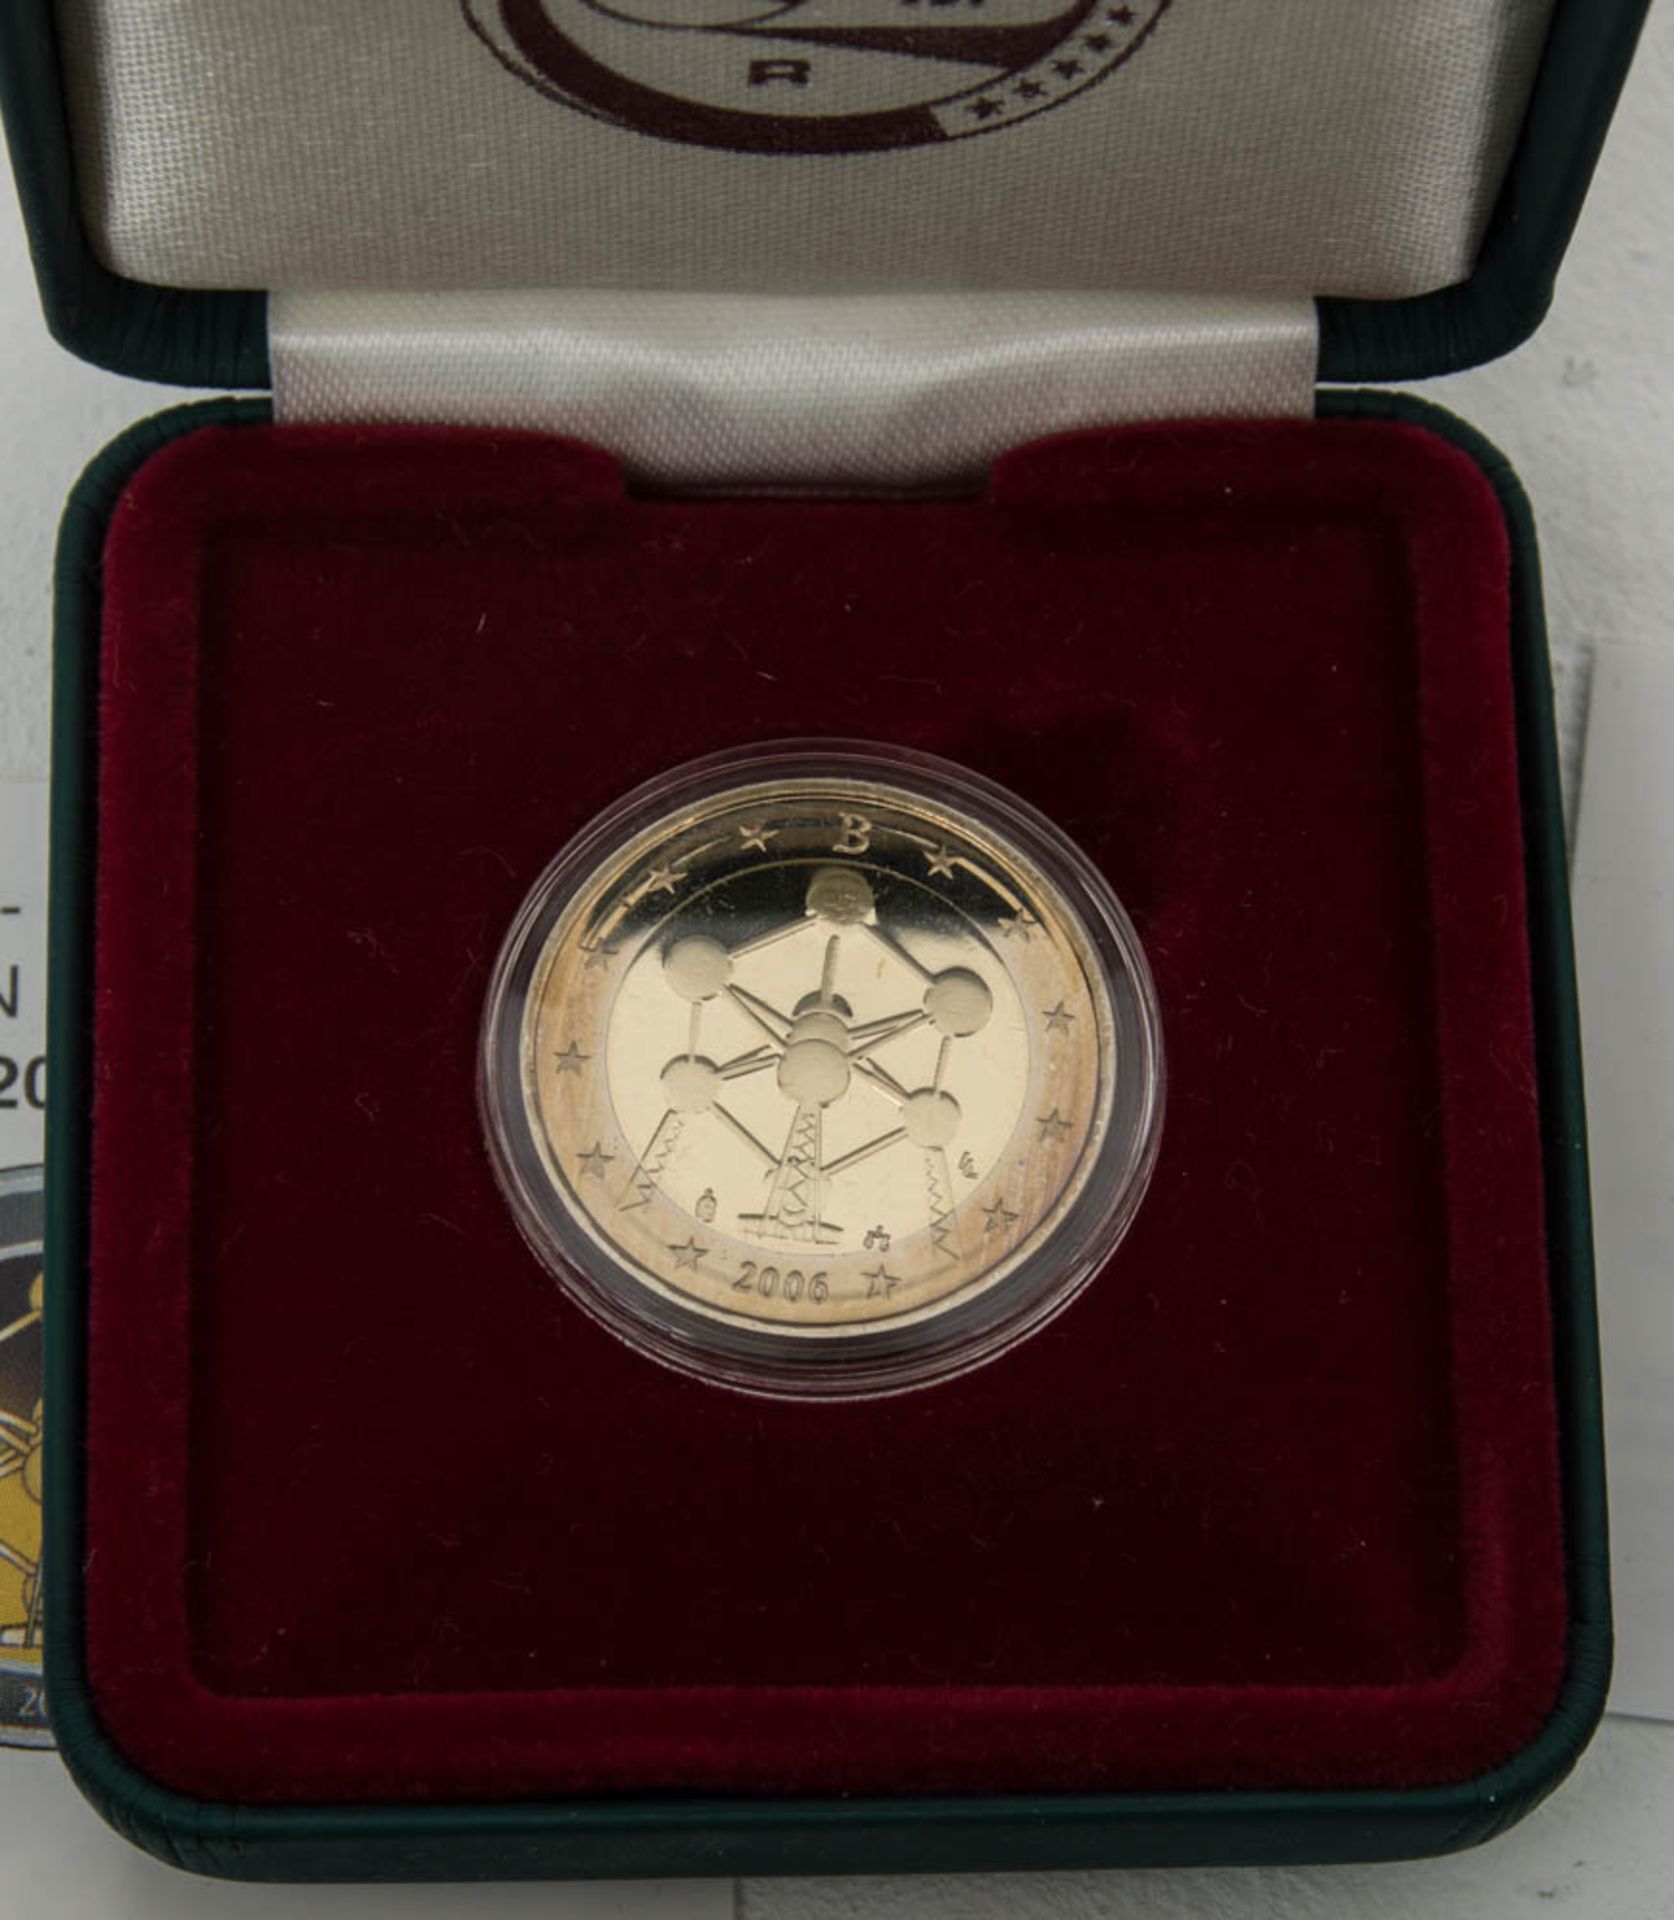 Sammlung Belgien 2 € Münzen.15 Stück, durchweg Sammlerqualität mit OVPs.Belgie - Bild 4 aus 6